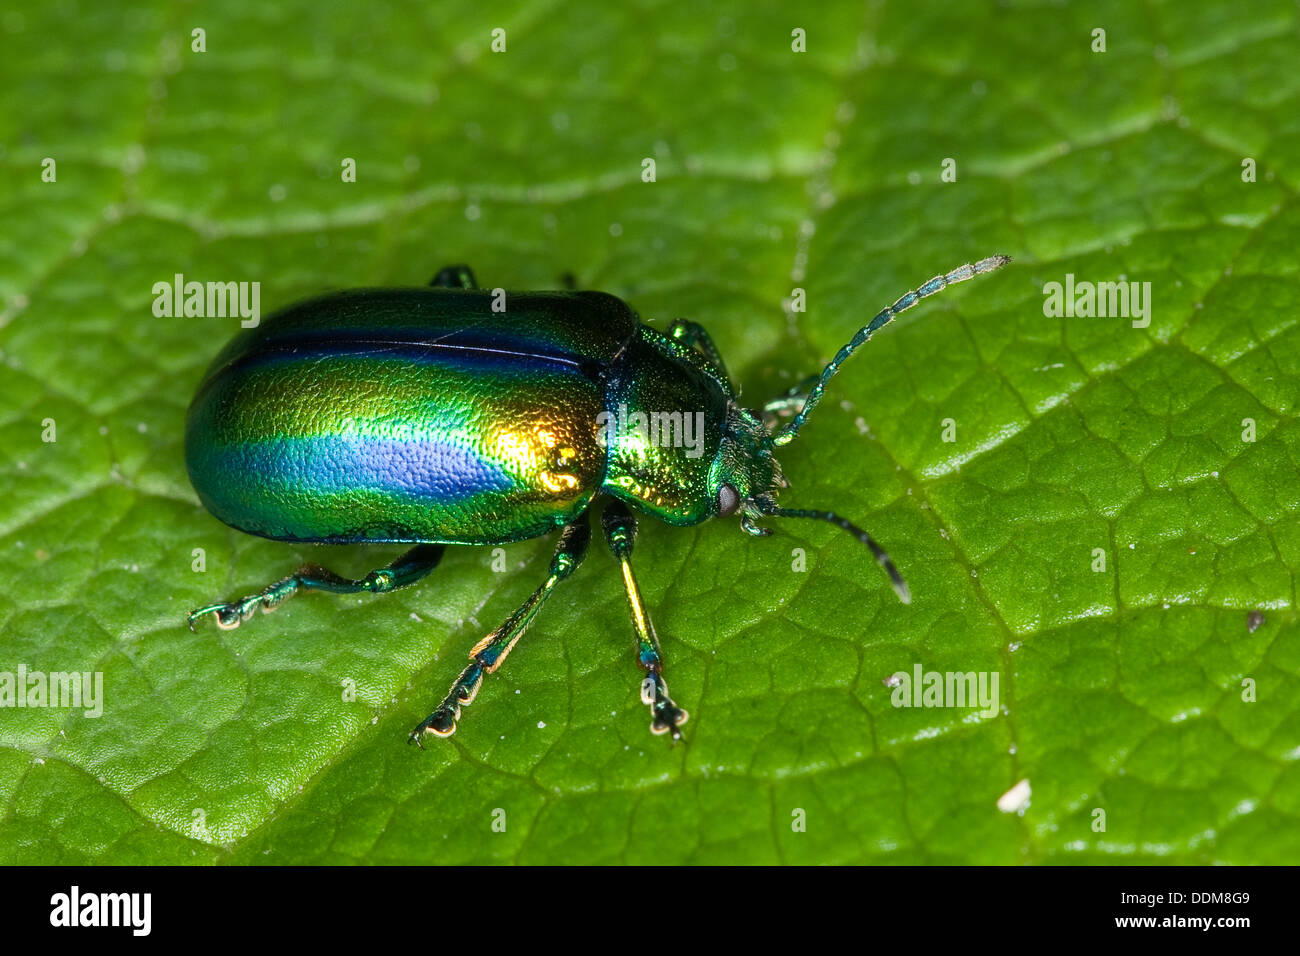 Blattkäfer, Oreina spec., Leafbeetle, Chrysomelidae, Leafbeetles, leaf beetles, Chrysomelidae Stock Photo